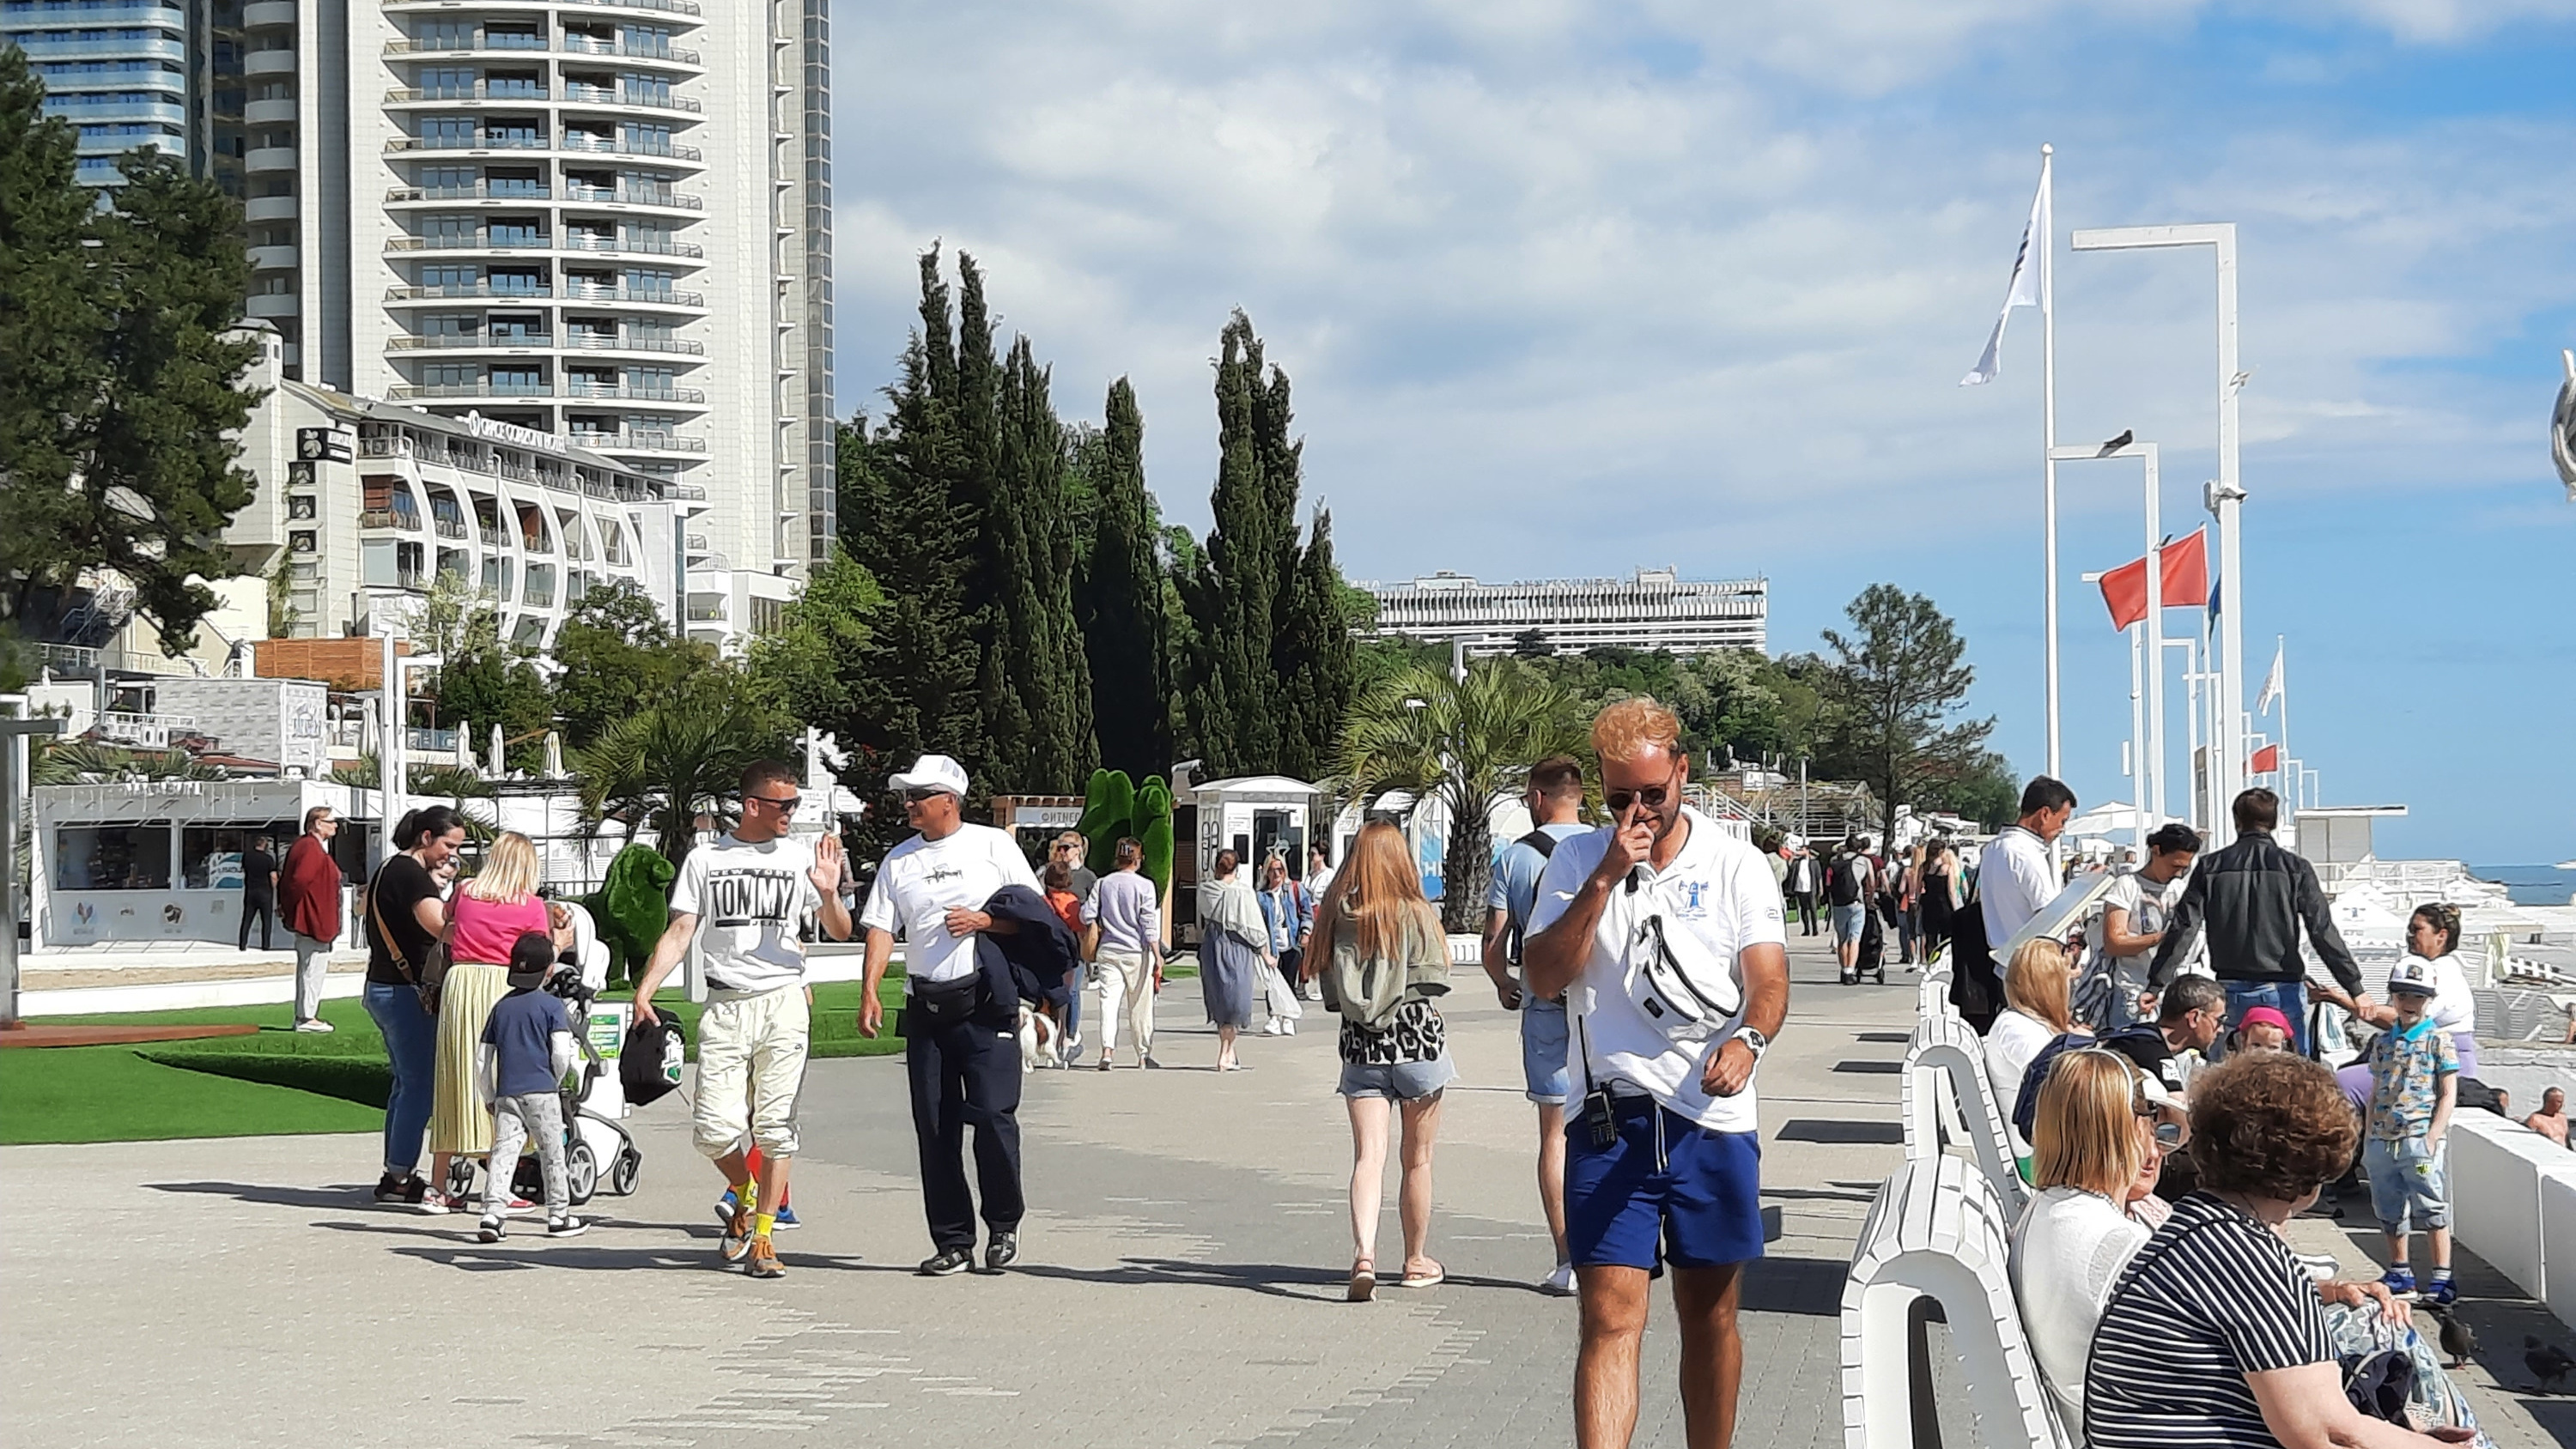 Площадь Южного Мола в Сочи закрывается для посещения — реконструкции Приморской набережной началась